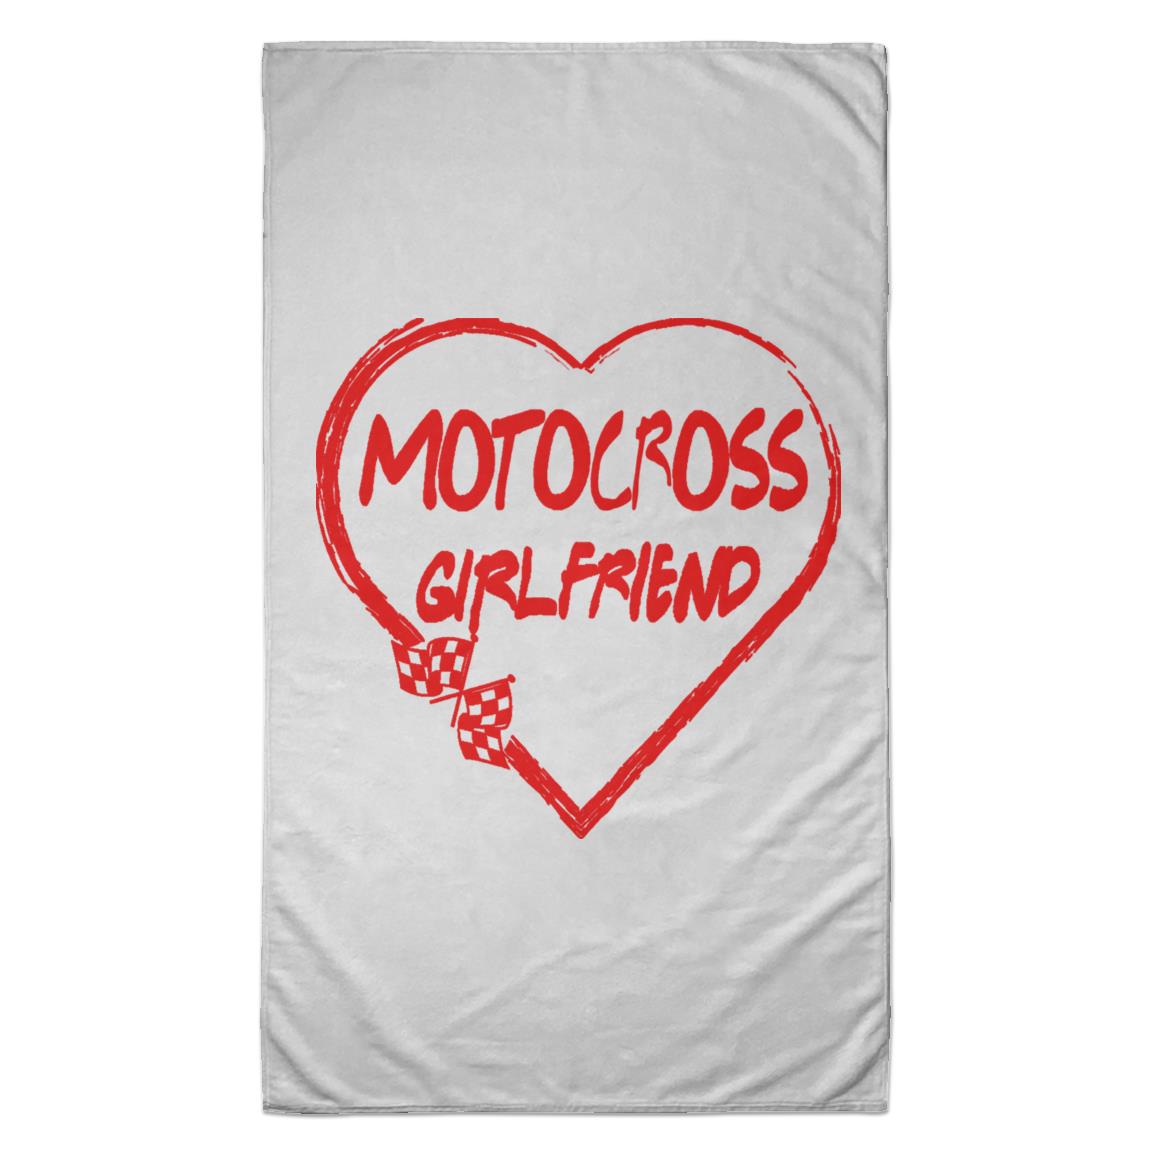 Motocross Girlfriend Heart Towel - 35x60